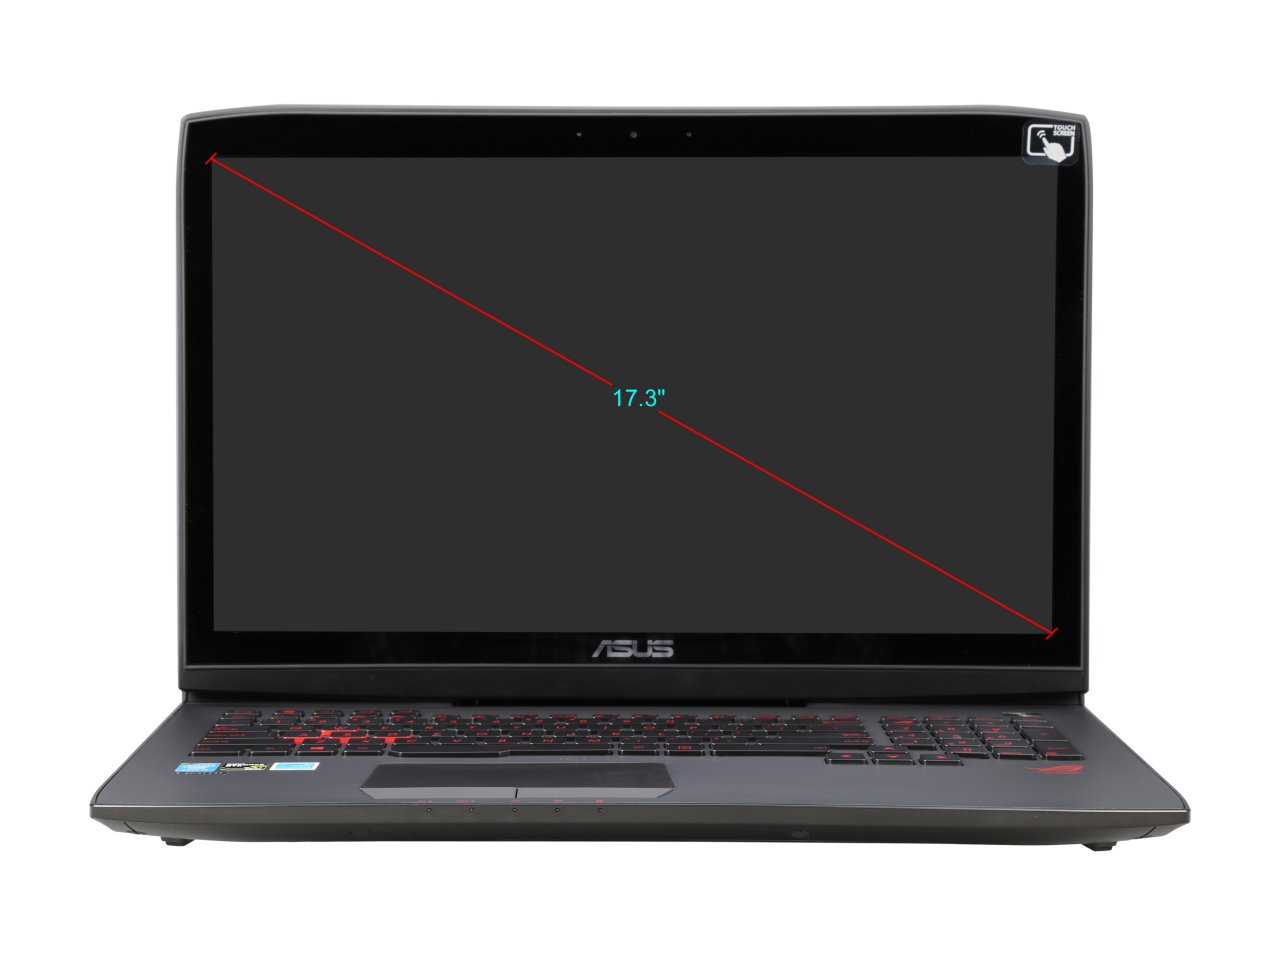 Laptop Asus ROG G751JM-BHI7T25  i7-4710HQ/8GB/1TB/VGA GTX 860 2GB/17.3